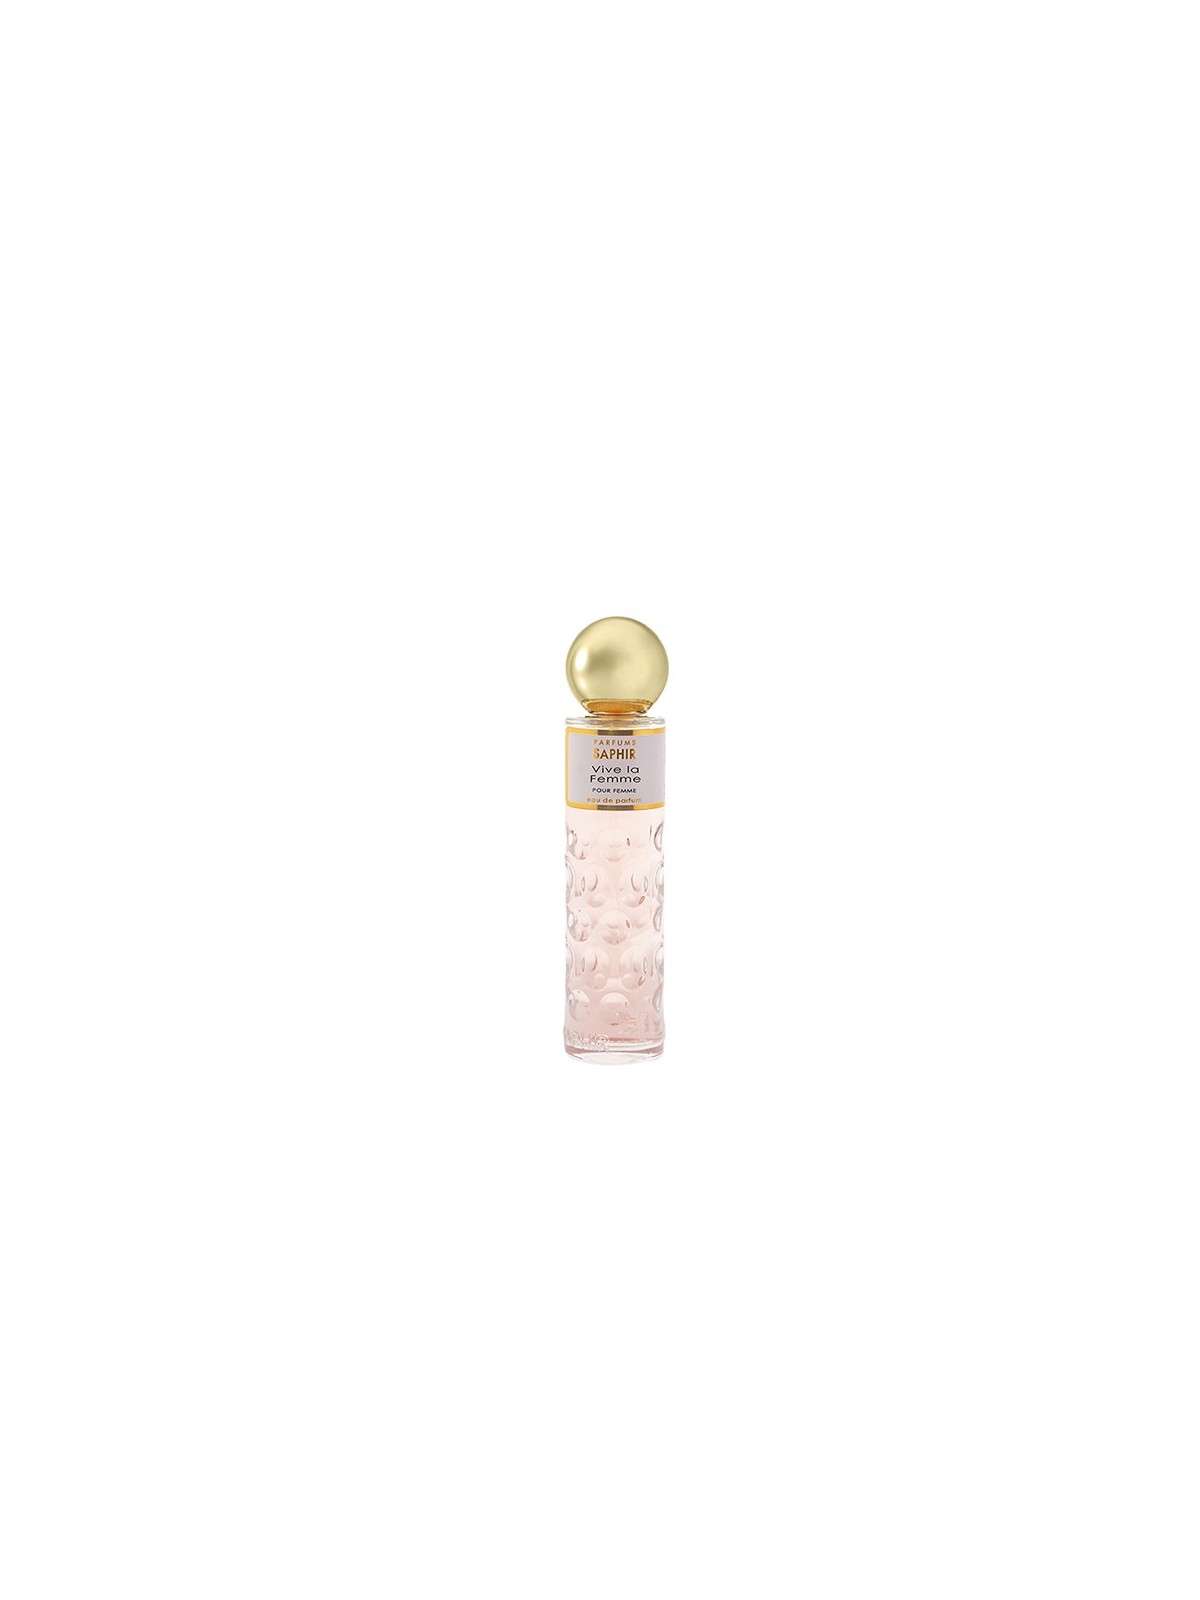 Comprar Perfume SAPHIR Vive la Femme 30ml. en Inicio por sólo 3,50 € o un precio específico de 3,50 € en Thalie Care